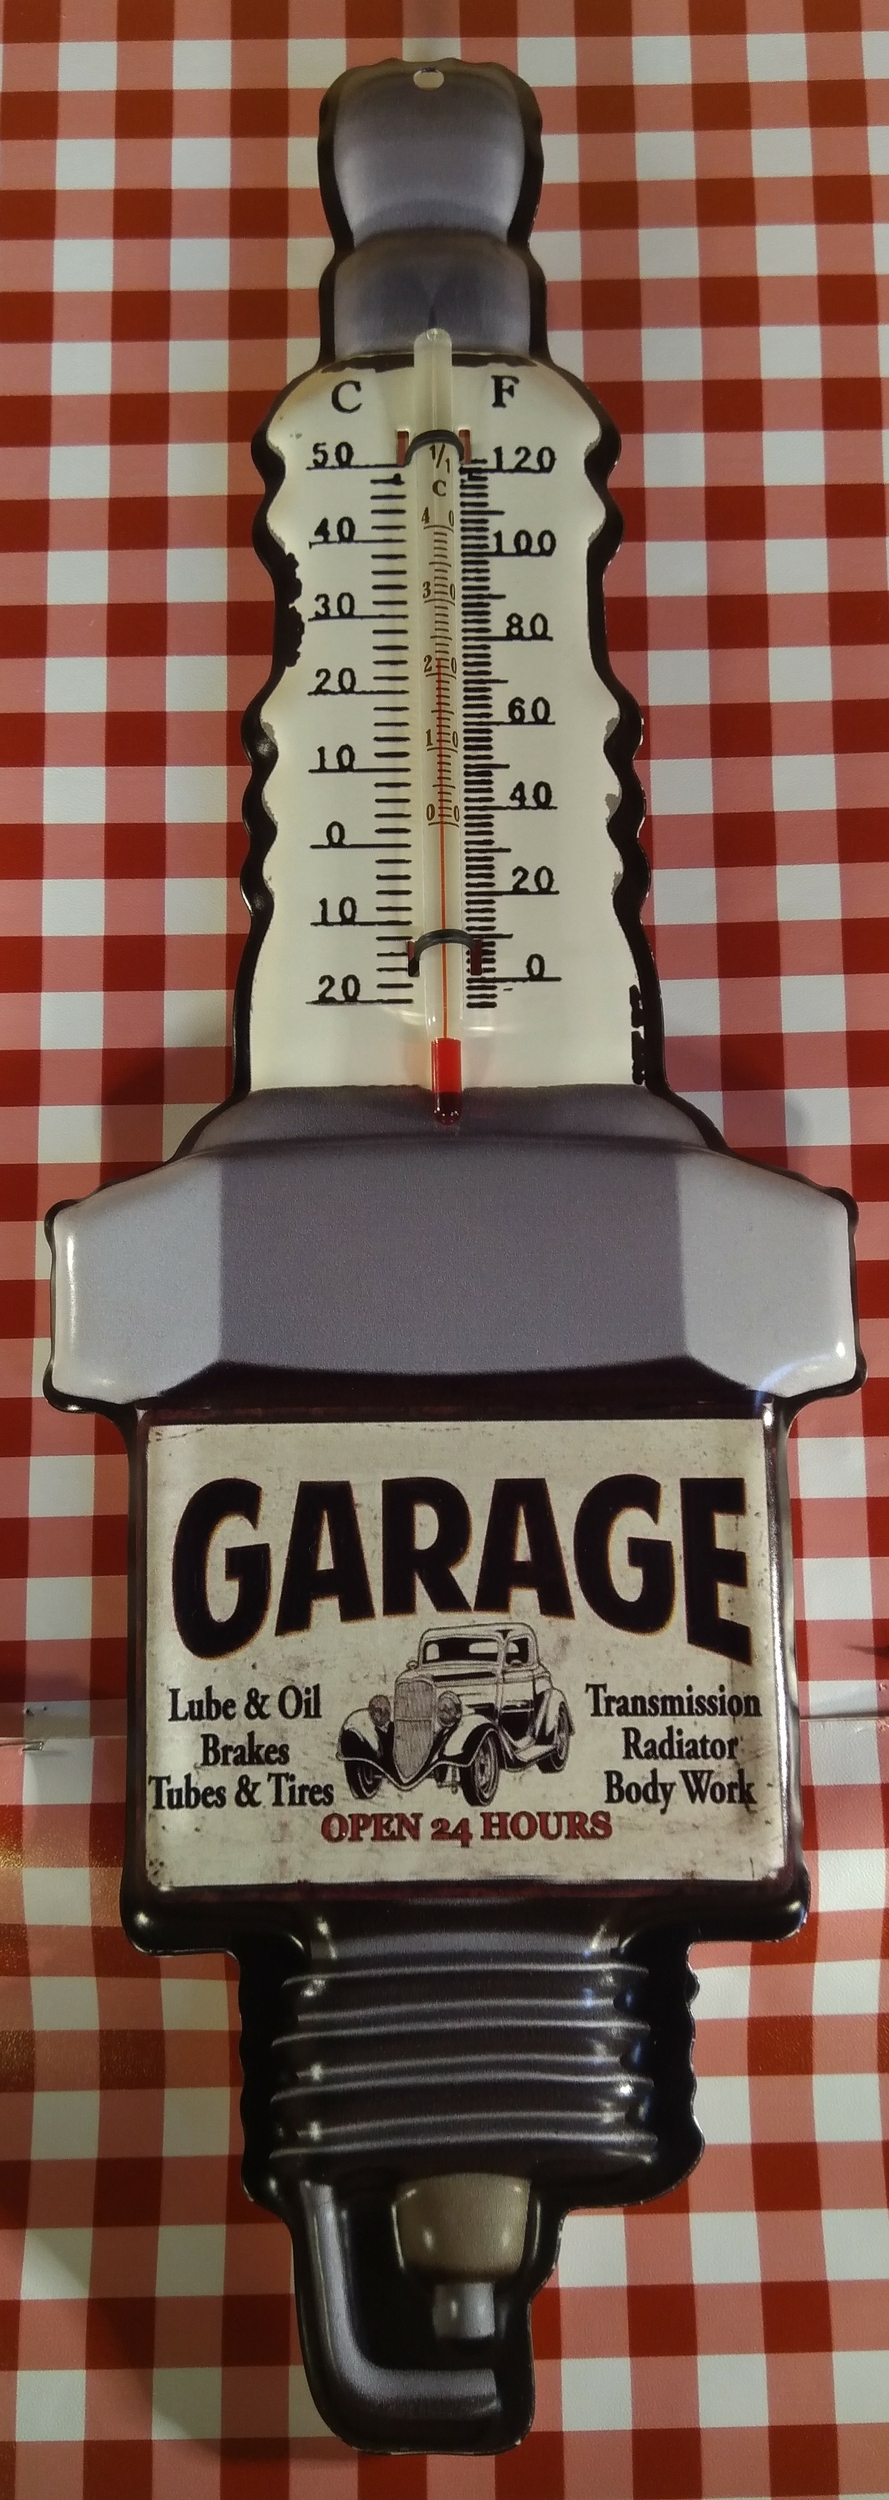 thermomètre mural déco rétro vintage garage